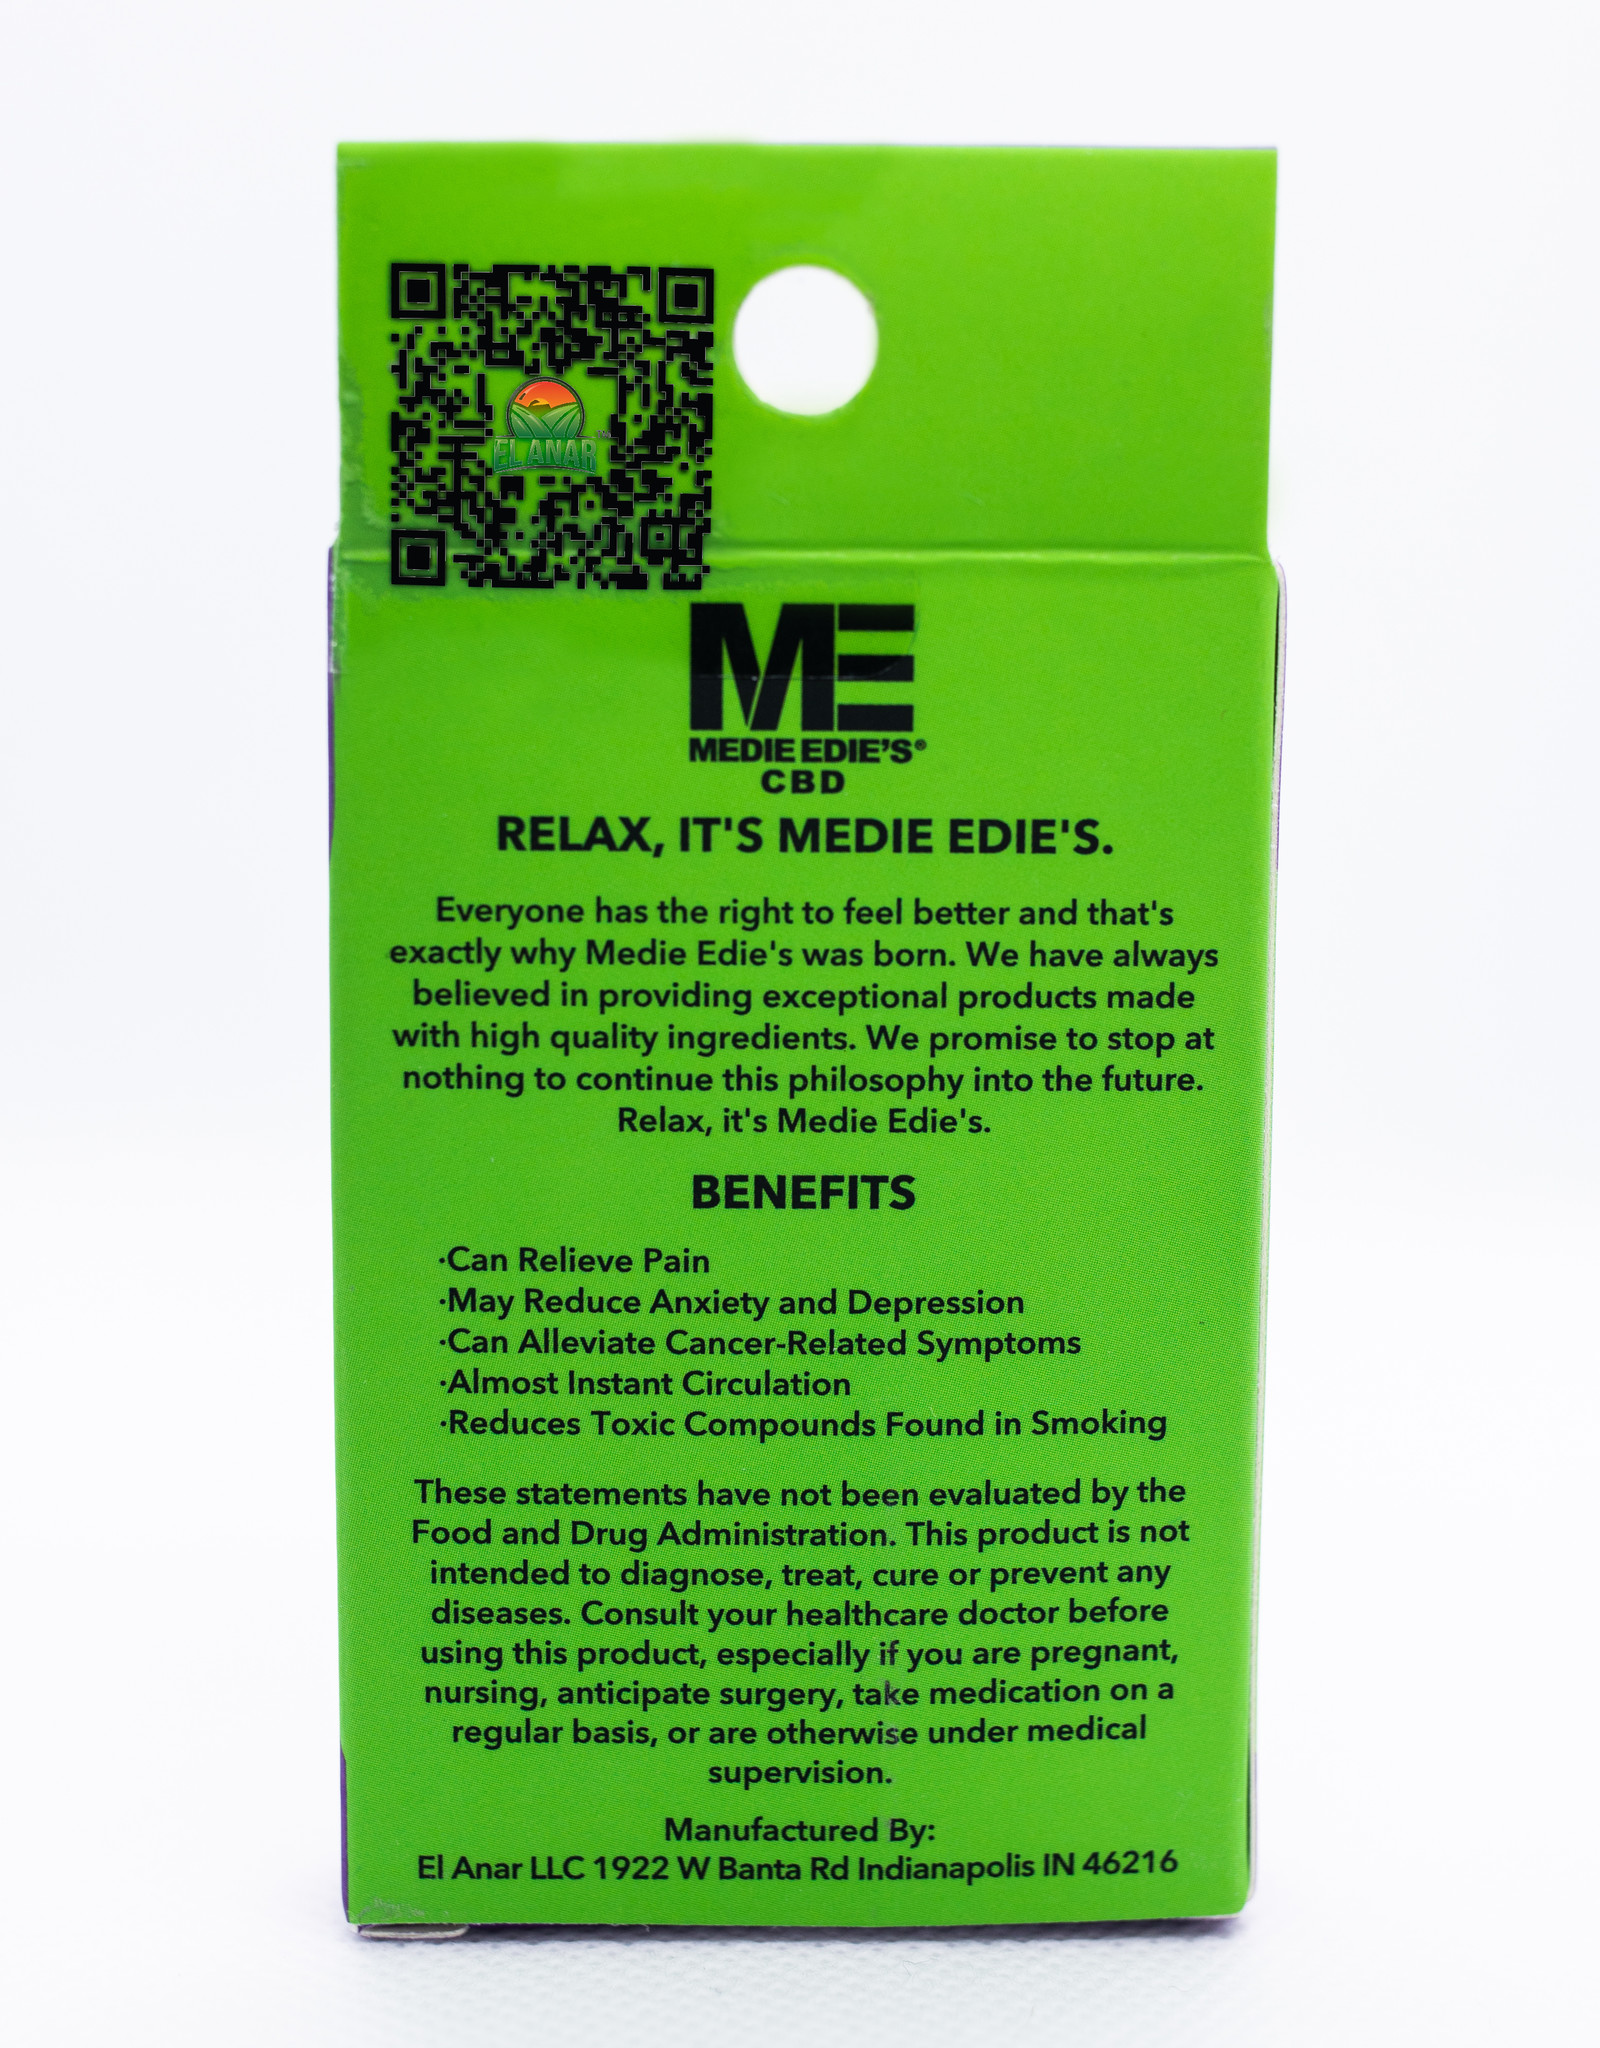 Medie Edie's Medie Edie's 1ml Delta-8 Vape Cartridge Mimosa -  800mg